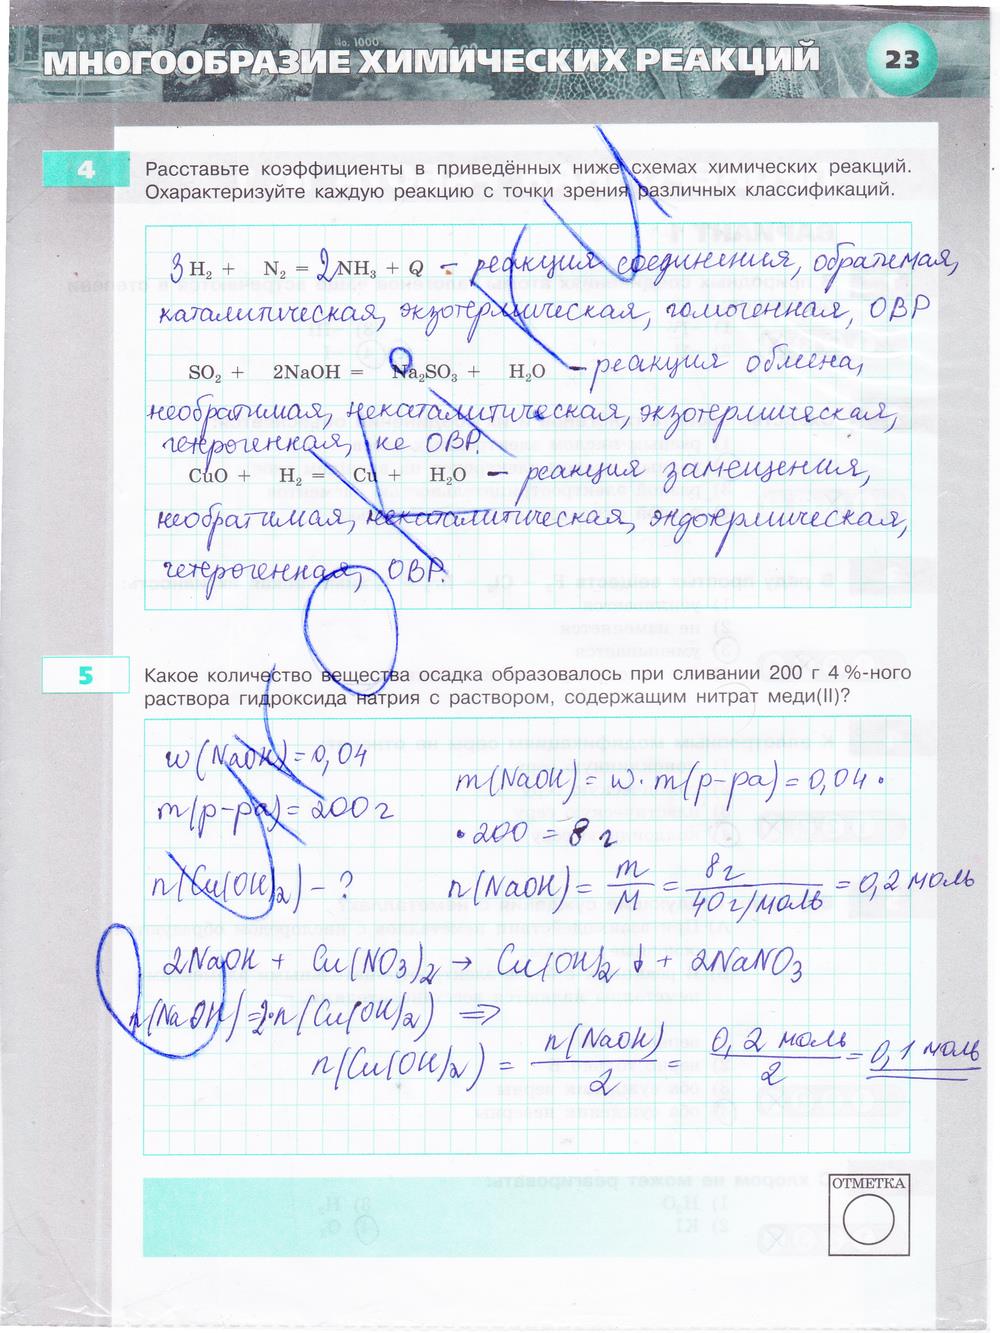 гдз 9 класс тетрадь-экзаменатор страница 23 химия Бобылева, Бирюлина